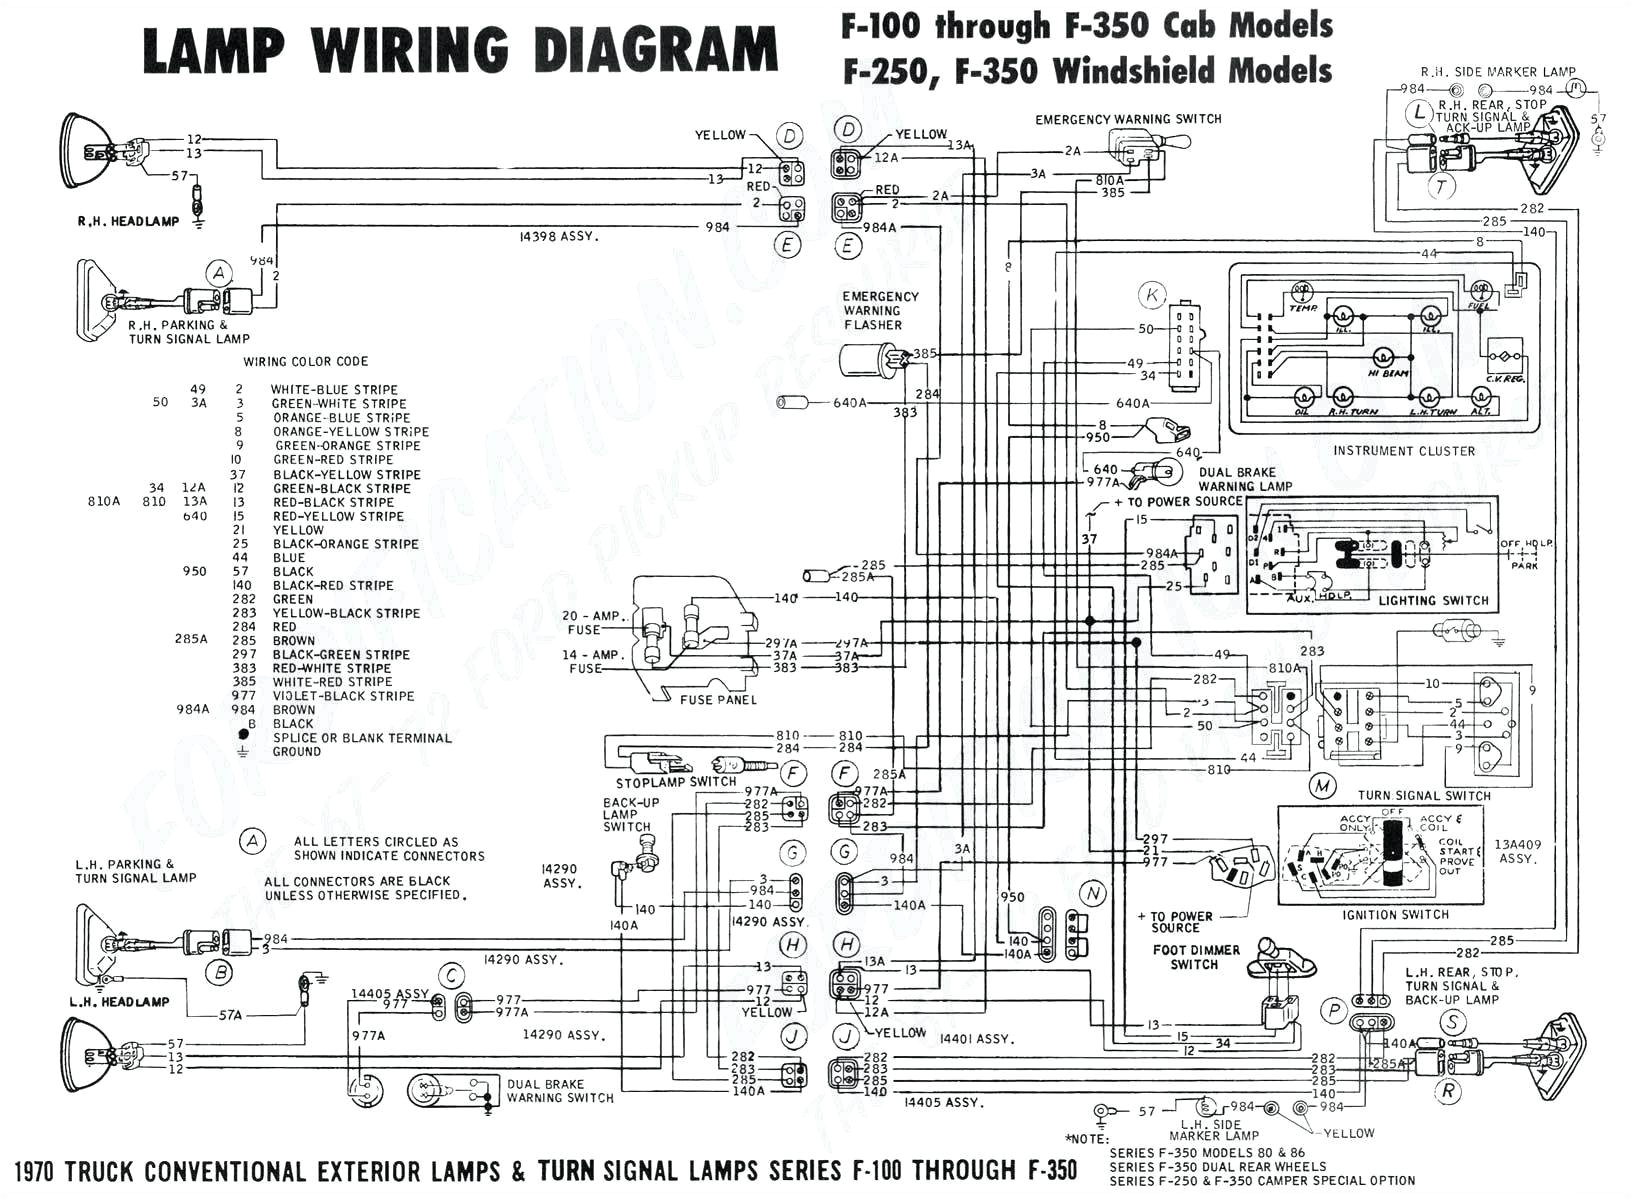 68 camaro alternator wiring diagram free download wiring diagram 68 camaro horn relay wiring harness free download